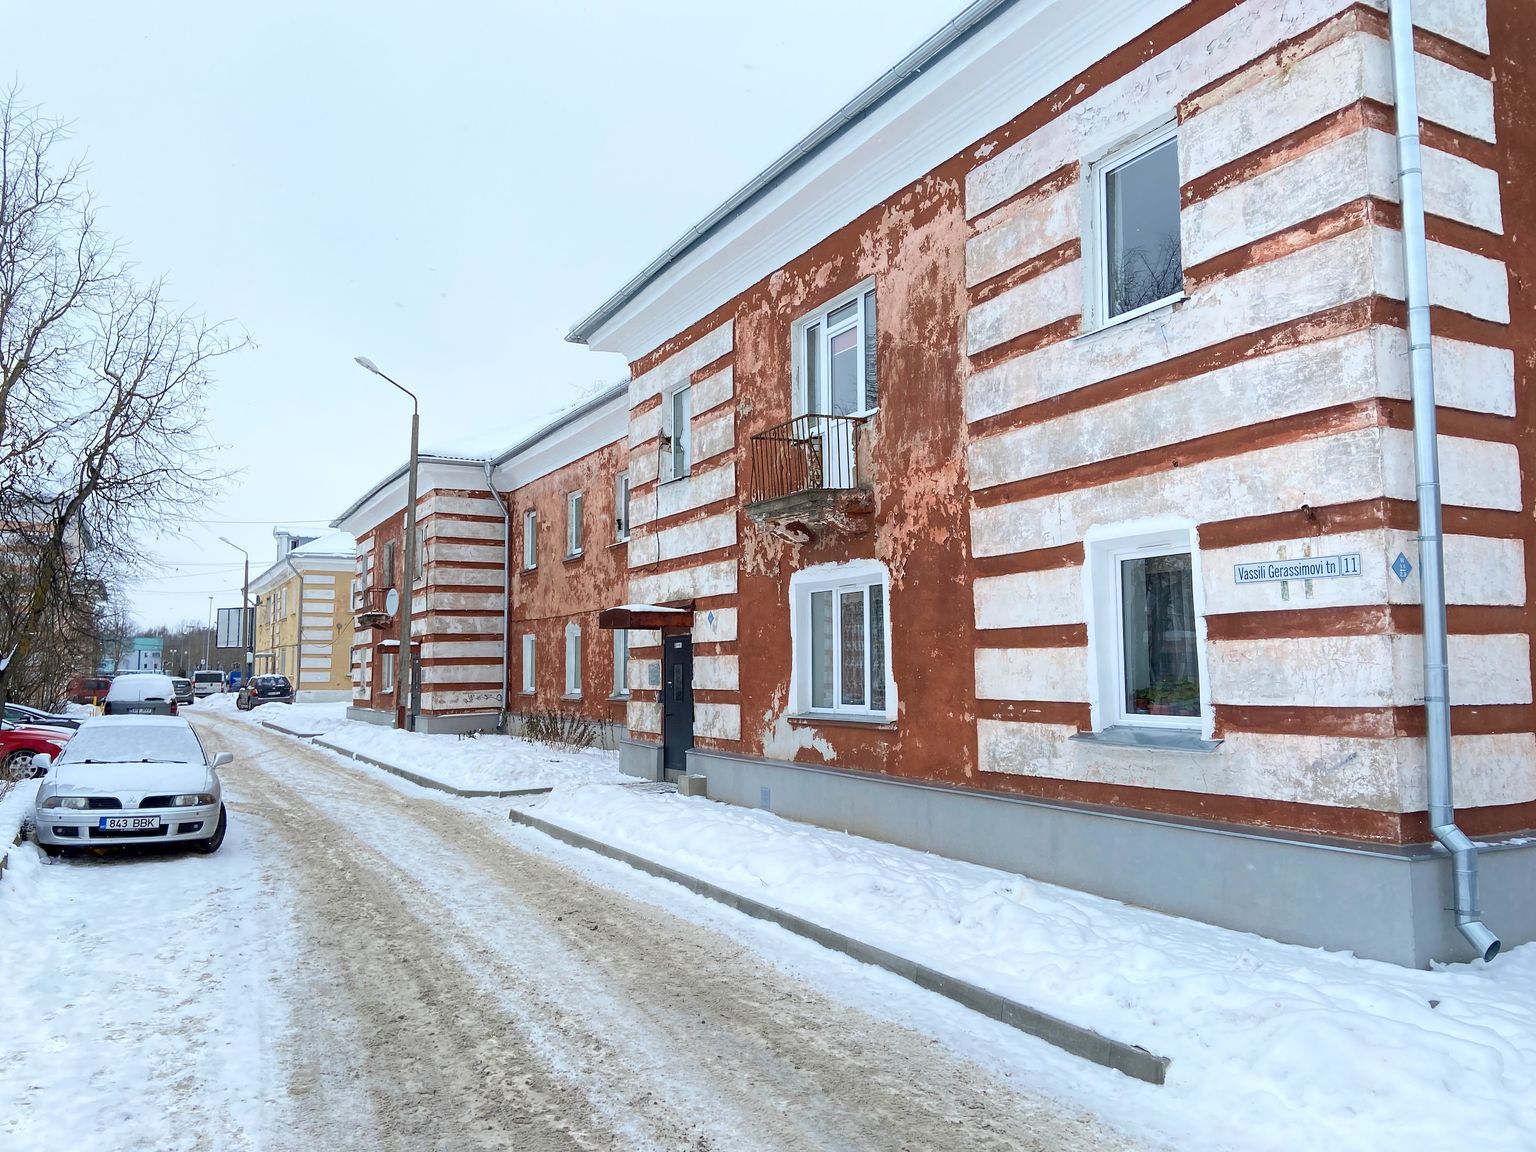 Narvas Kreenholmi rajoonis paiknev korrusmaja, kus vingugaas järjekordse tragöödia põhjustas.